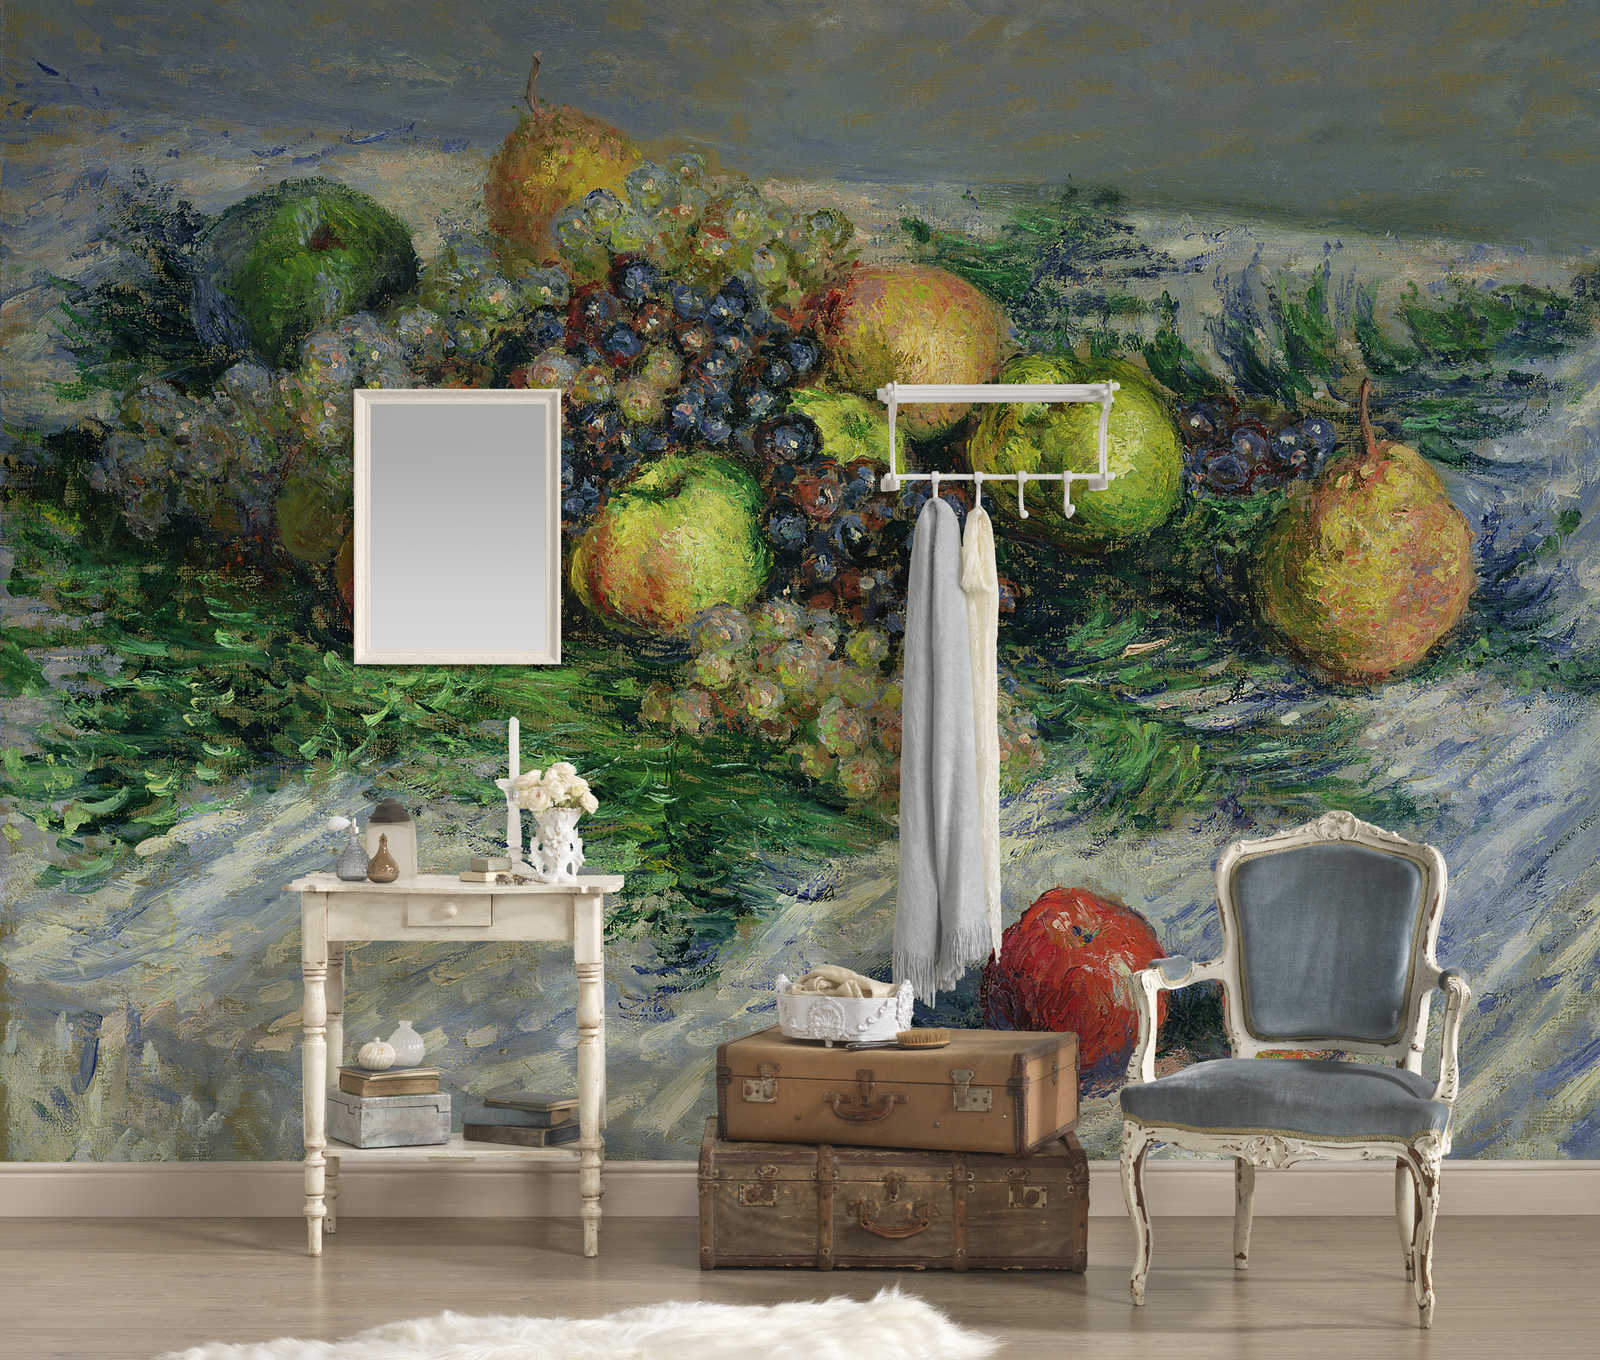             Mural "Naturaleza muerta con peras y uvas" de Claude Monet
        